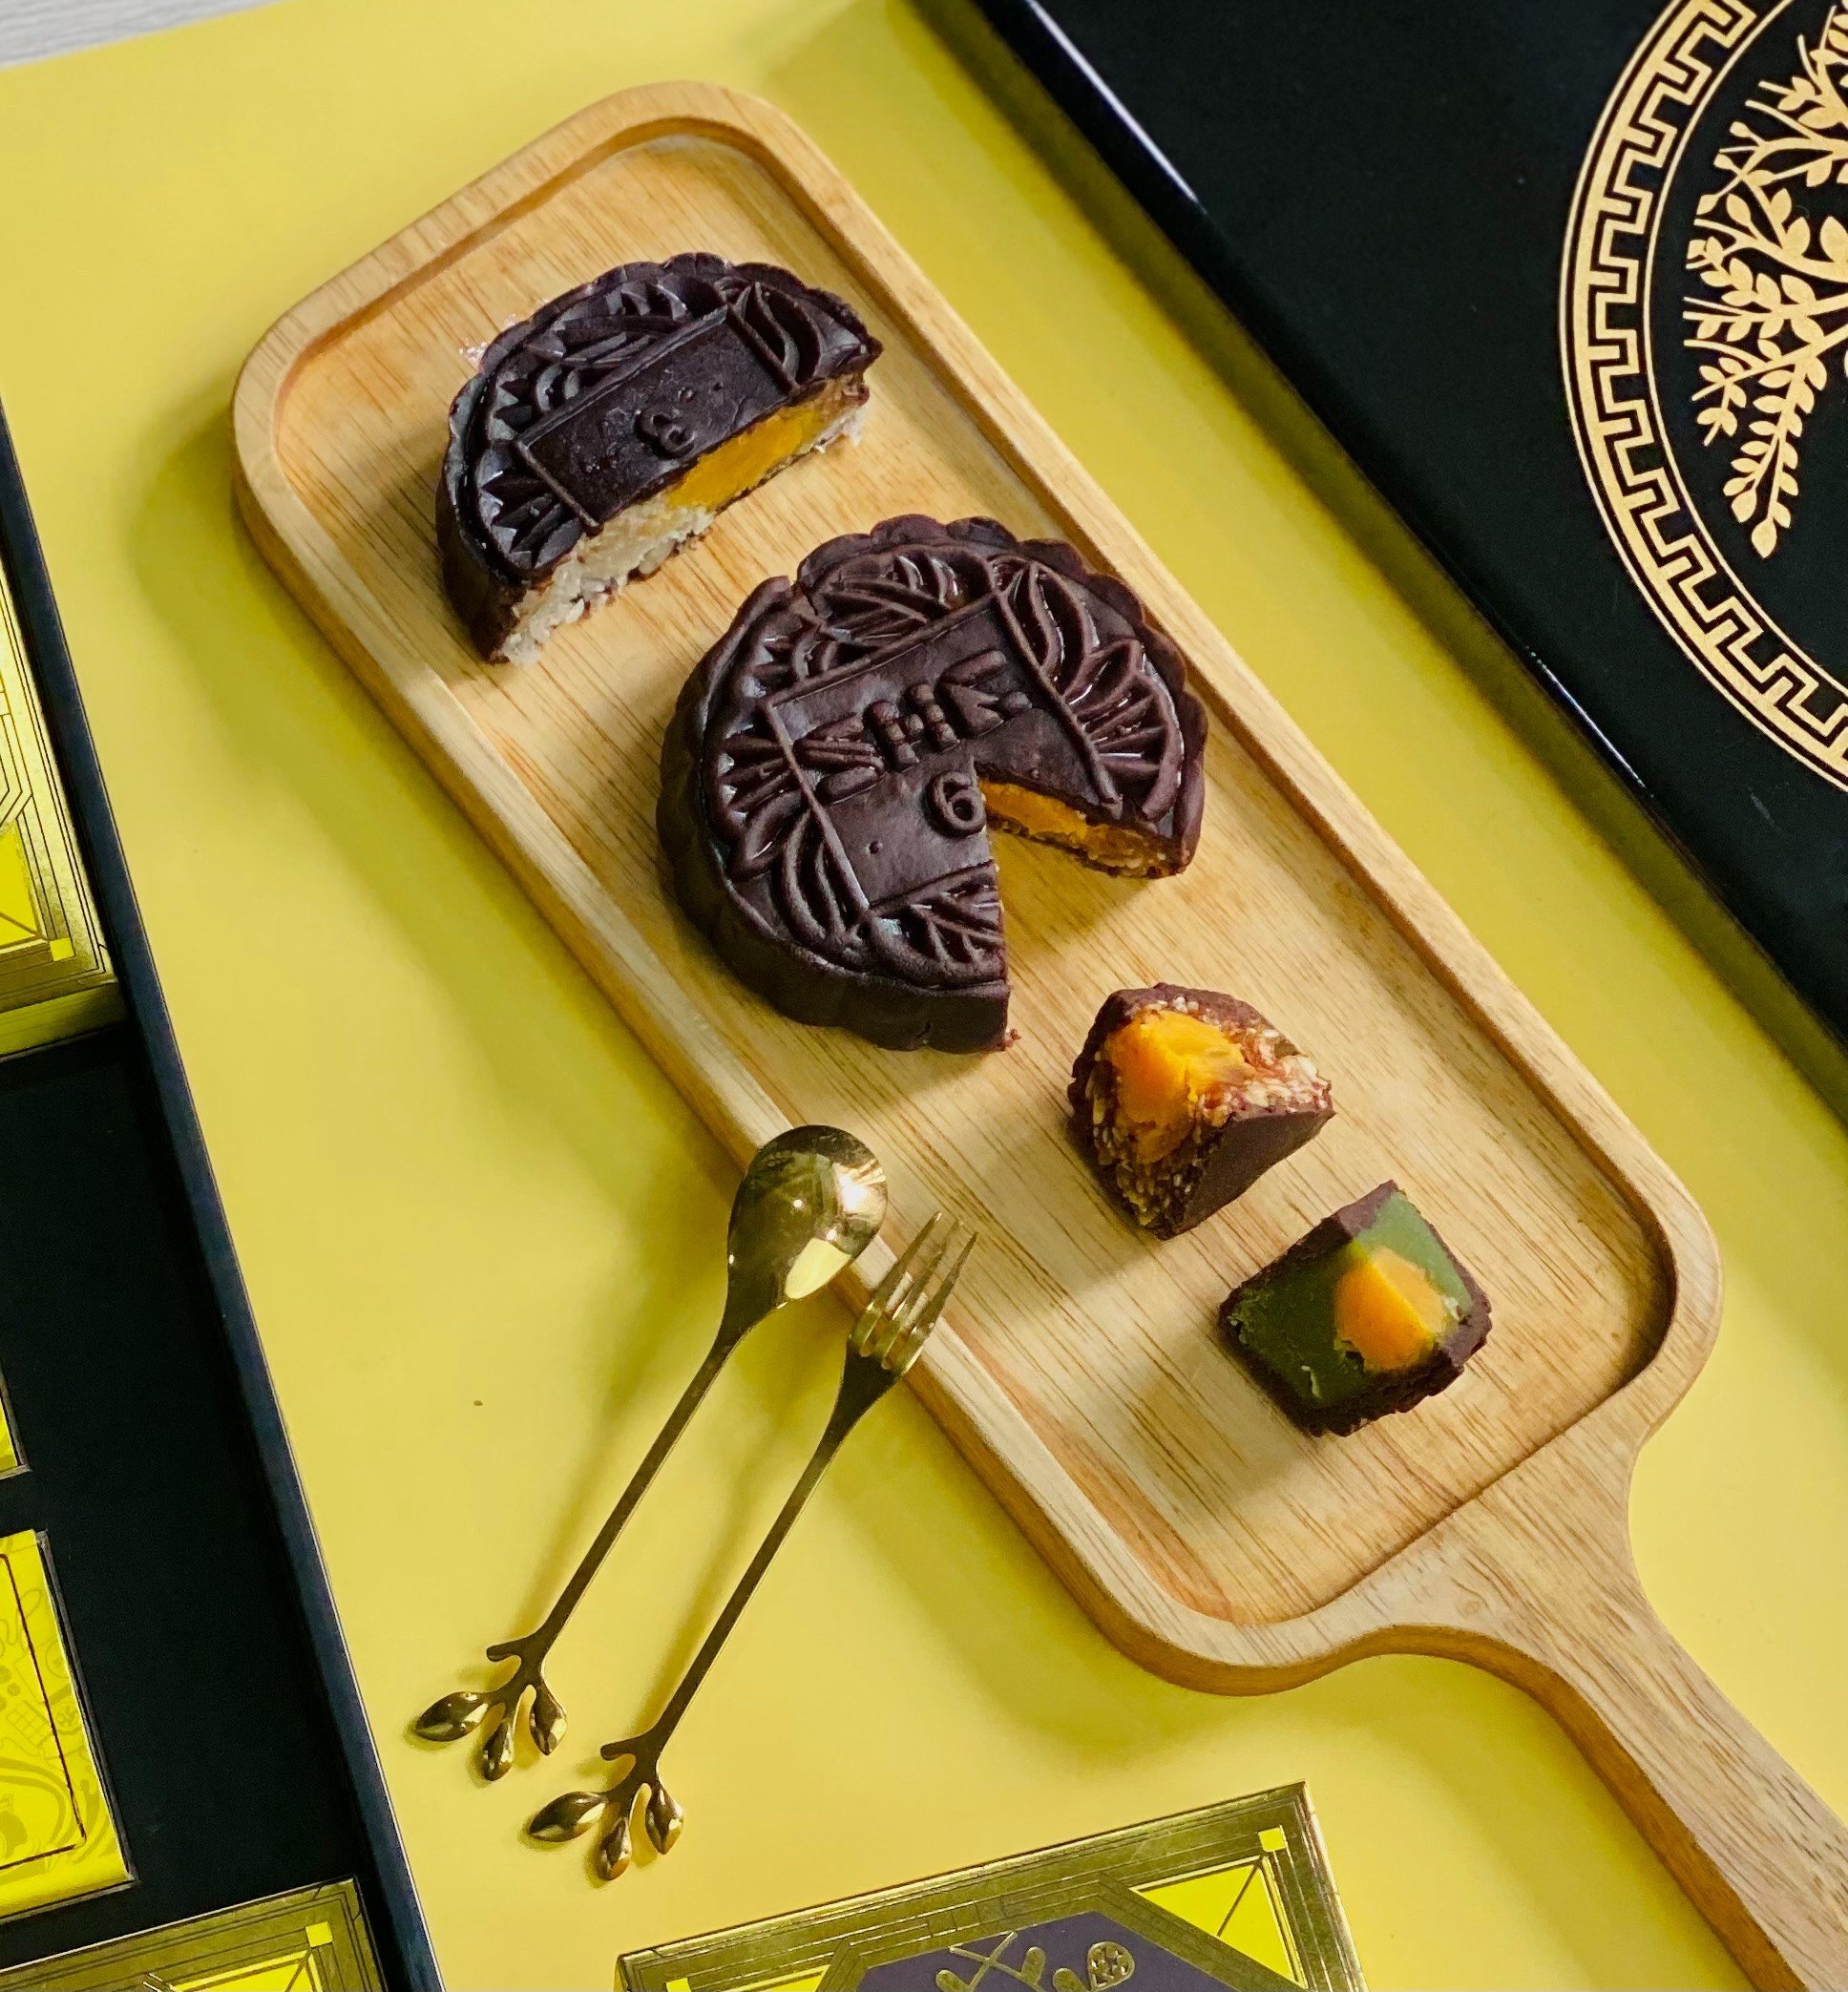 Bộ Trăng Phú Quý MS - 4 bánh trung thu socola - SHE Chocolate - Món quà sức khỏe dành tặng người thân - Trung thu 2023